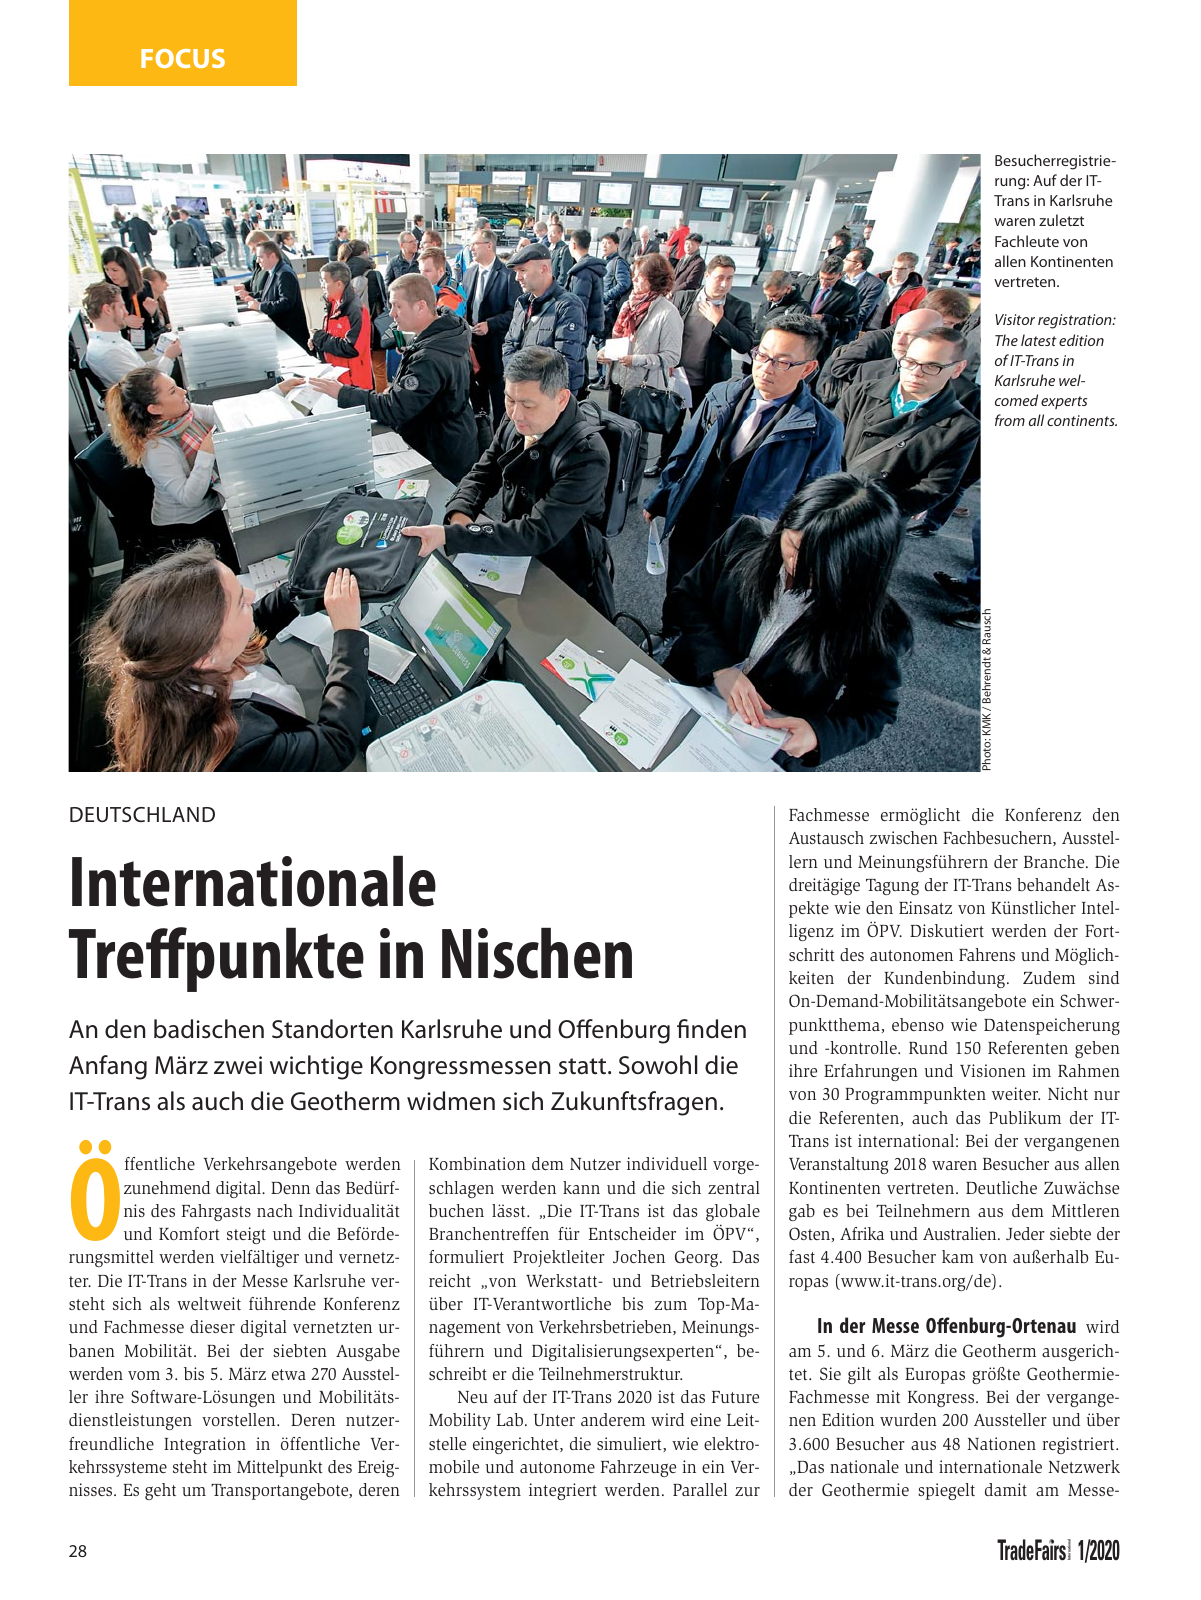 Vorschau TFI Trade-Fairs-International 01/2020 Seite 28